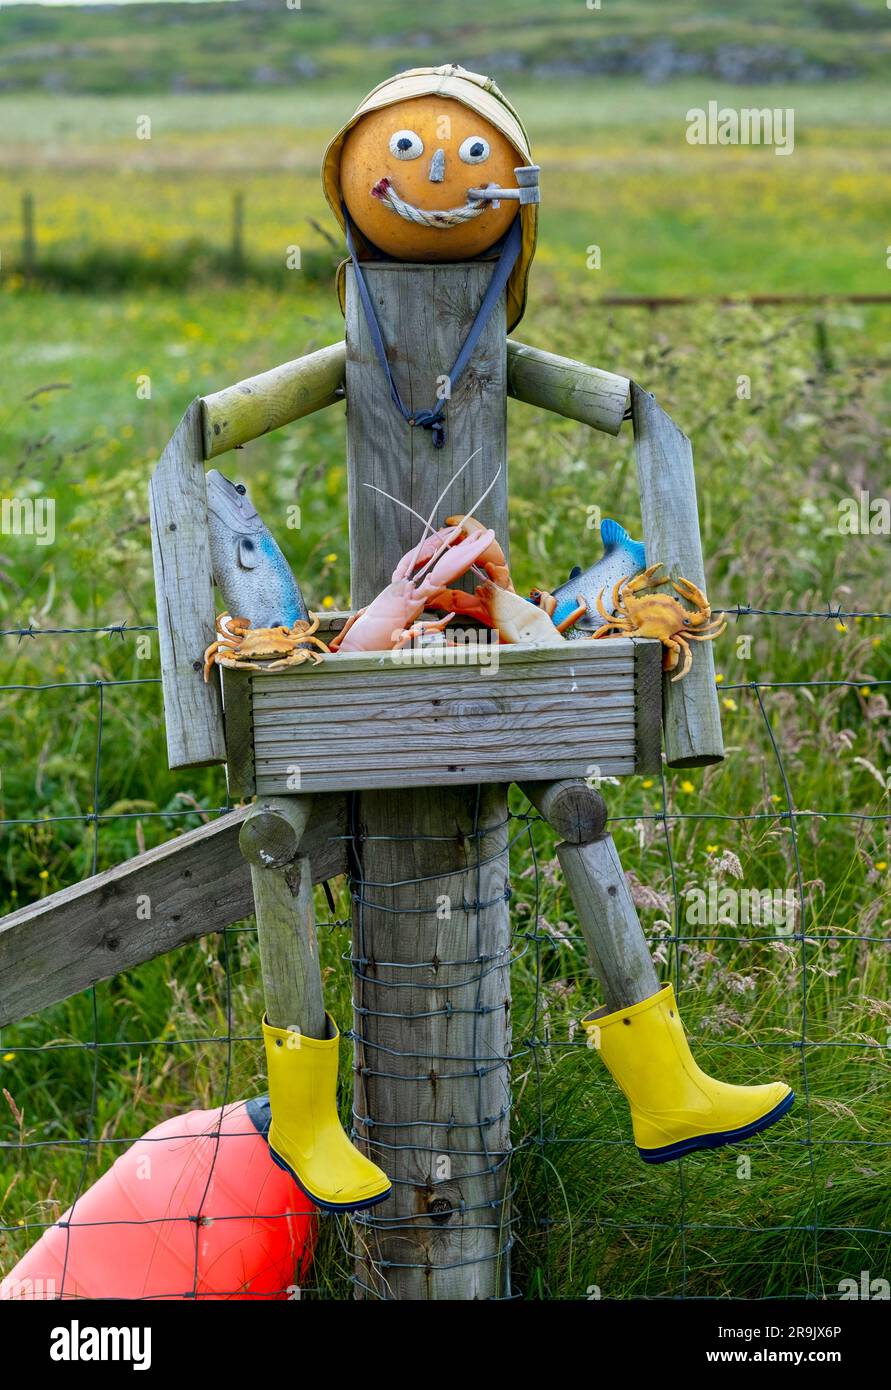 Art de jardin de pêcheur de homard, Vaul, île de Tiree, Hébrides intérieures, Écosse. Banque D'Images